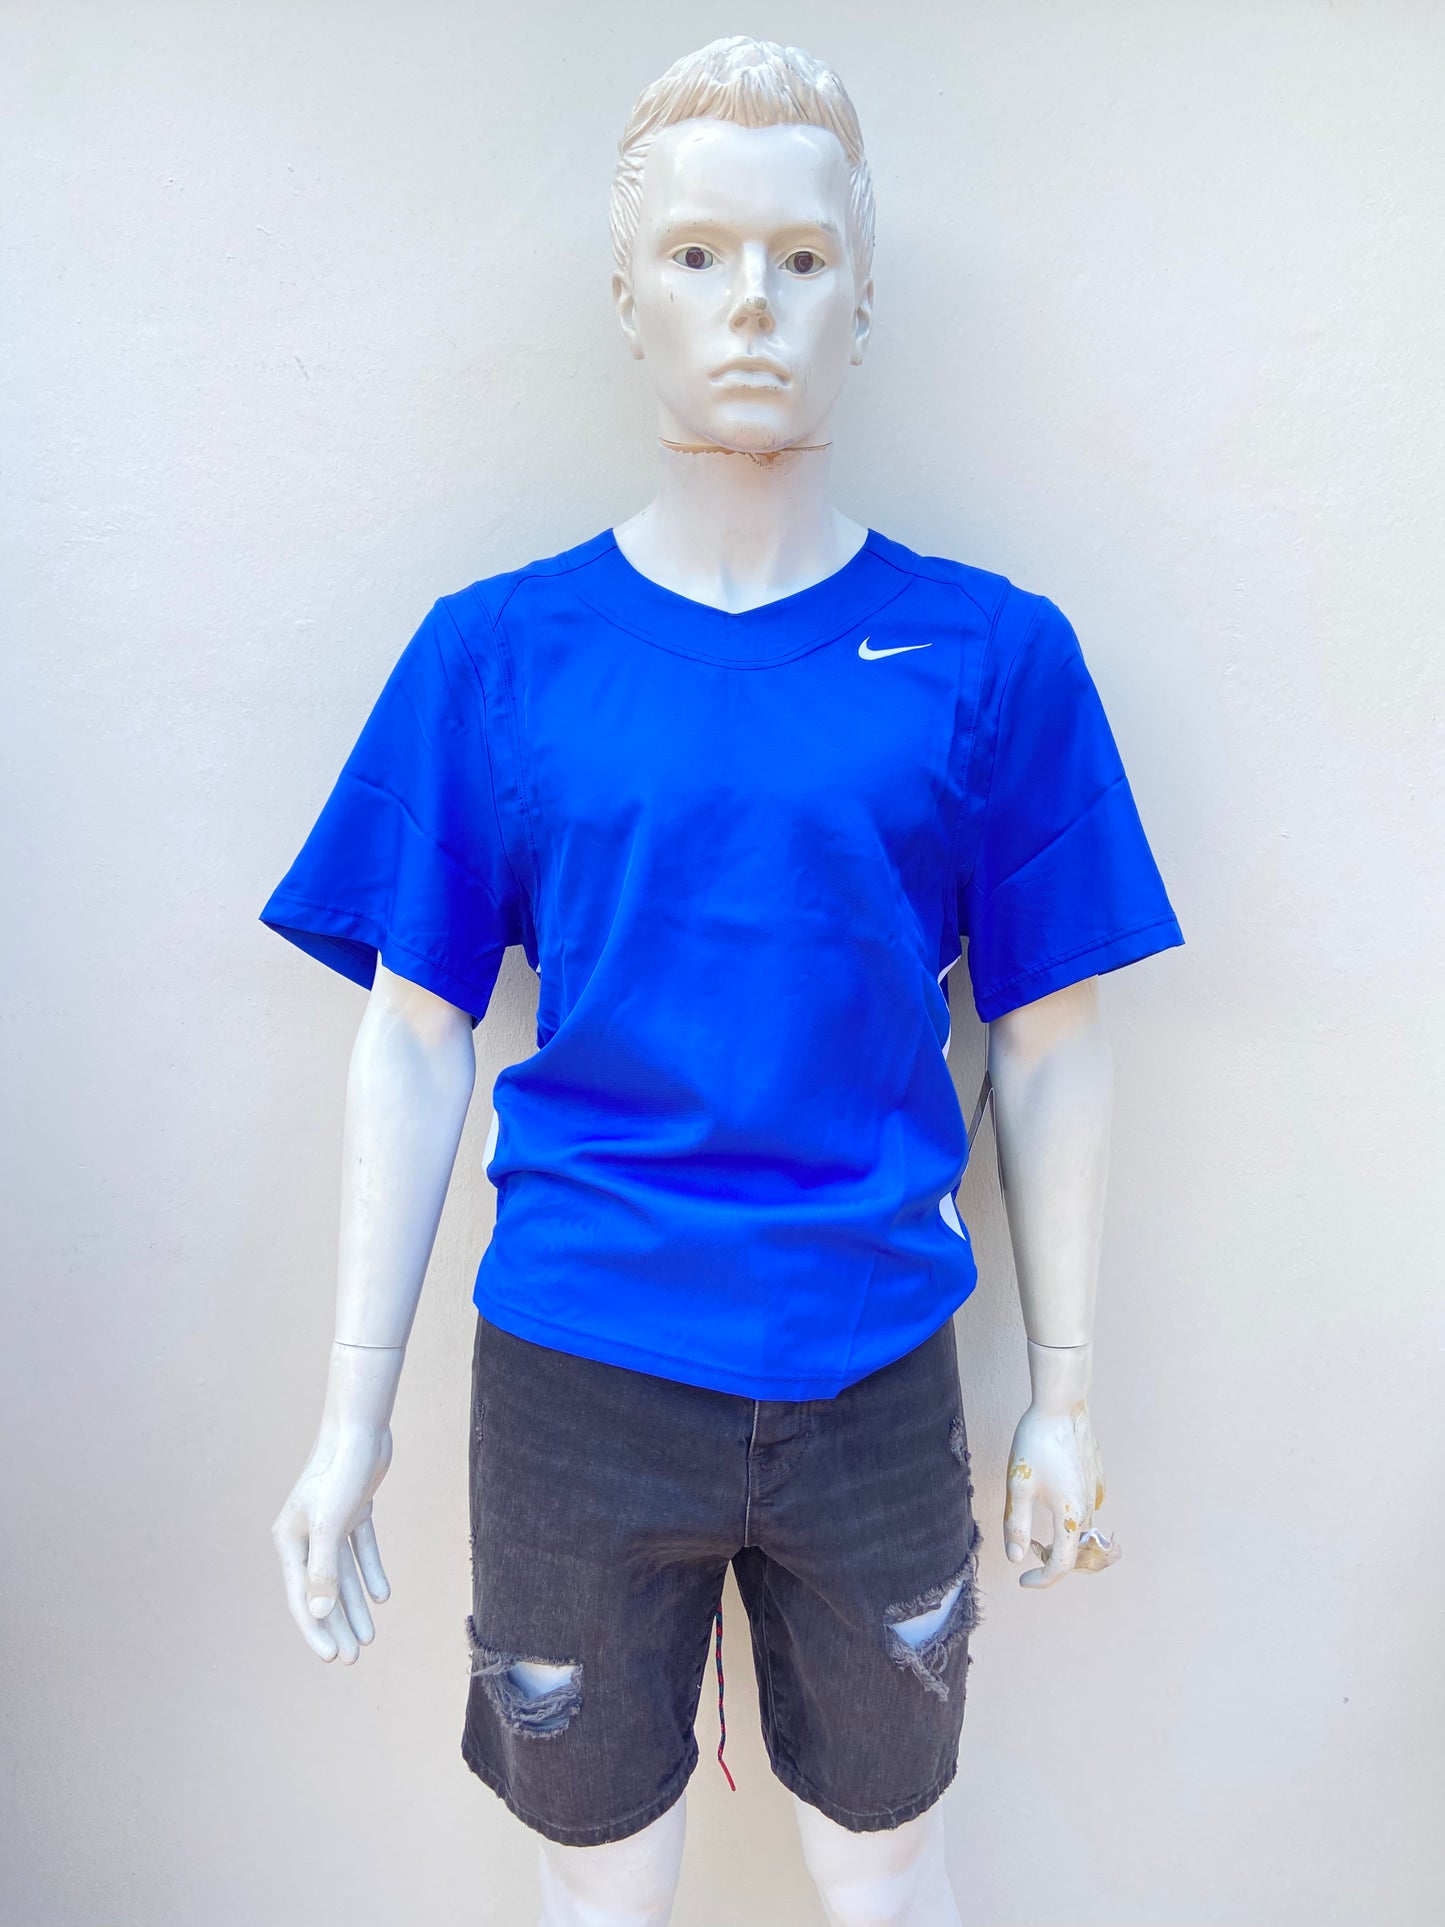 T-shirt Nike original azul rey con logotipo de la marca al lado.